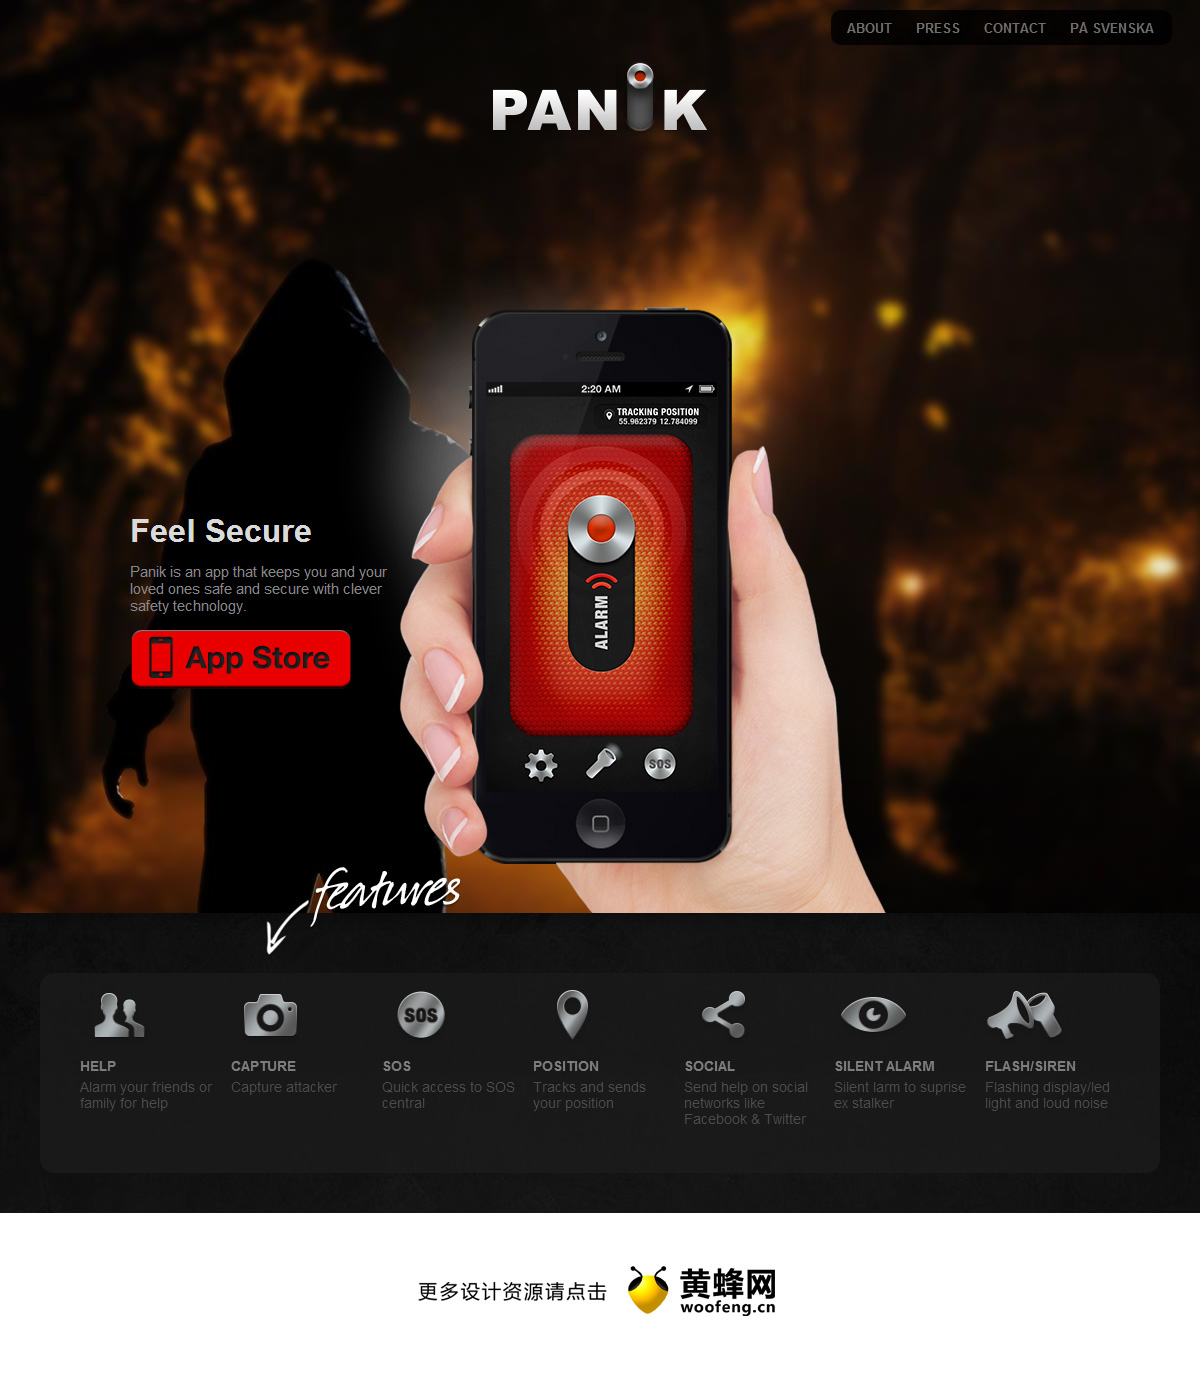 Panik应用程序网站，来源自黄蜂网https://woofeng.cn/web/